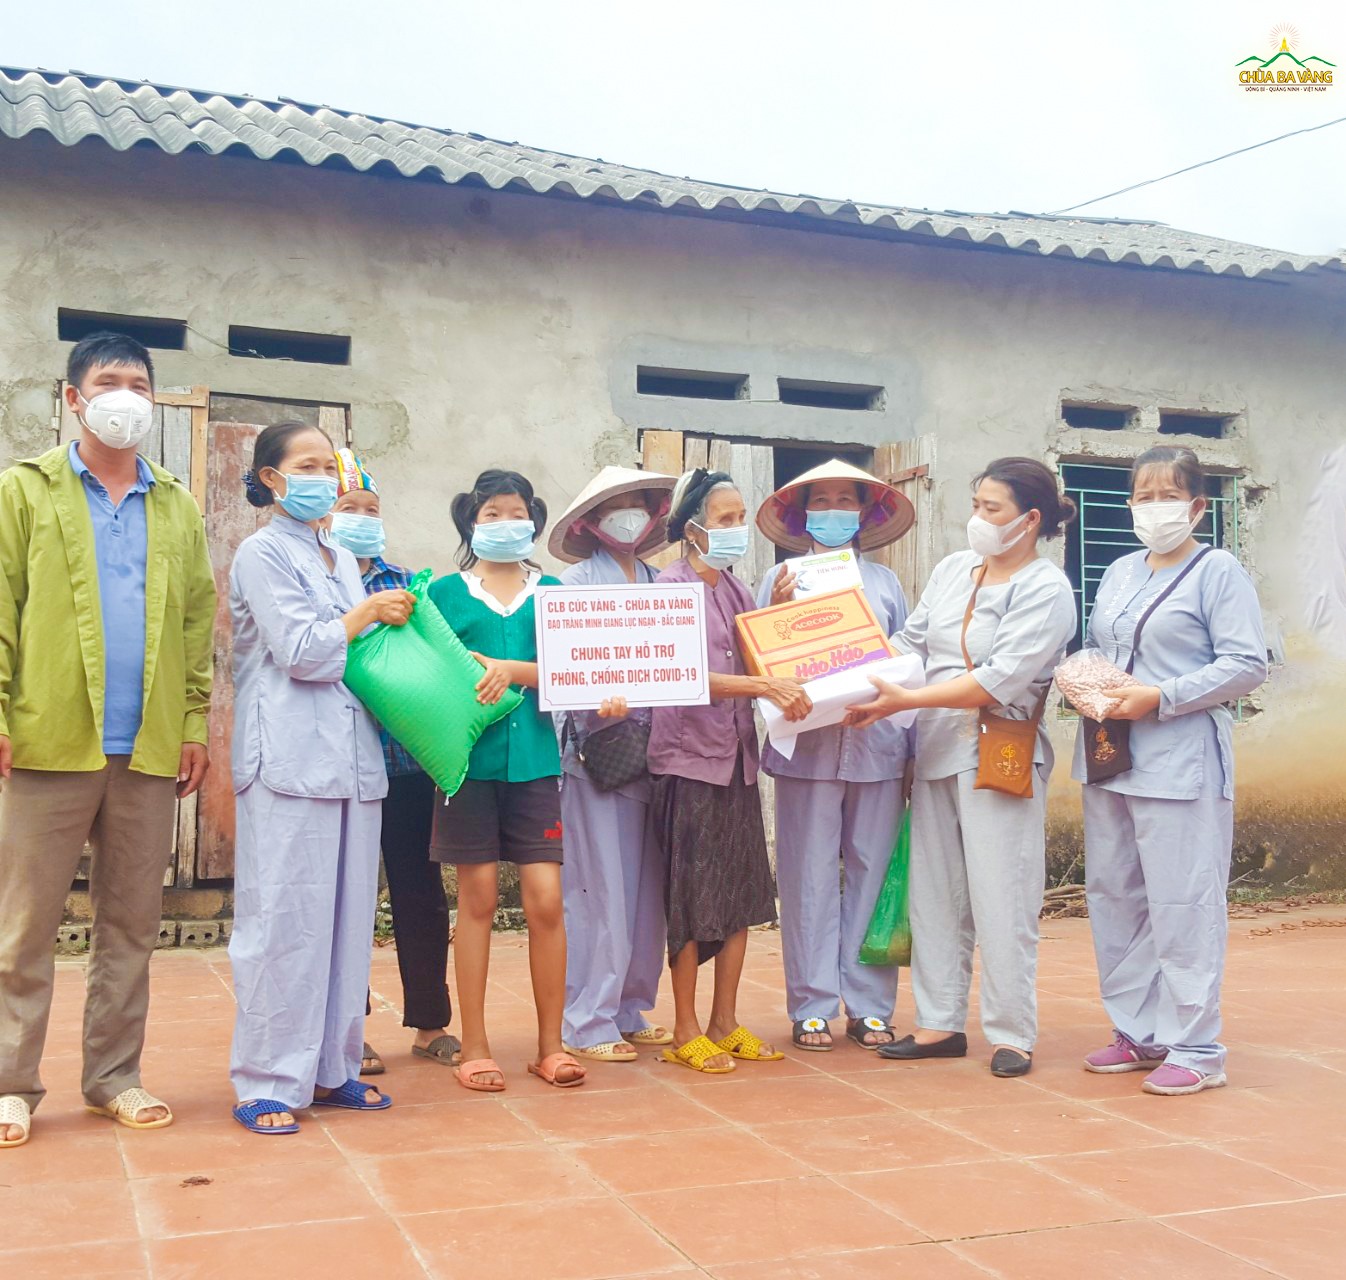 Đại diện các Phật tử chùa Ba Vàng tại Lục Ngạn, Bắc Giang đã có chuyến thiện nguyện đến những gia đình có hoàn cảnh khó khăn tại địa phương mình